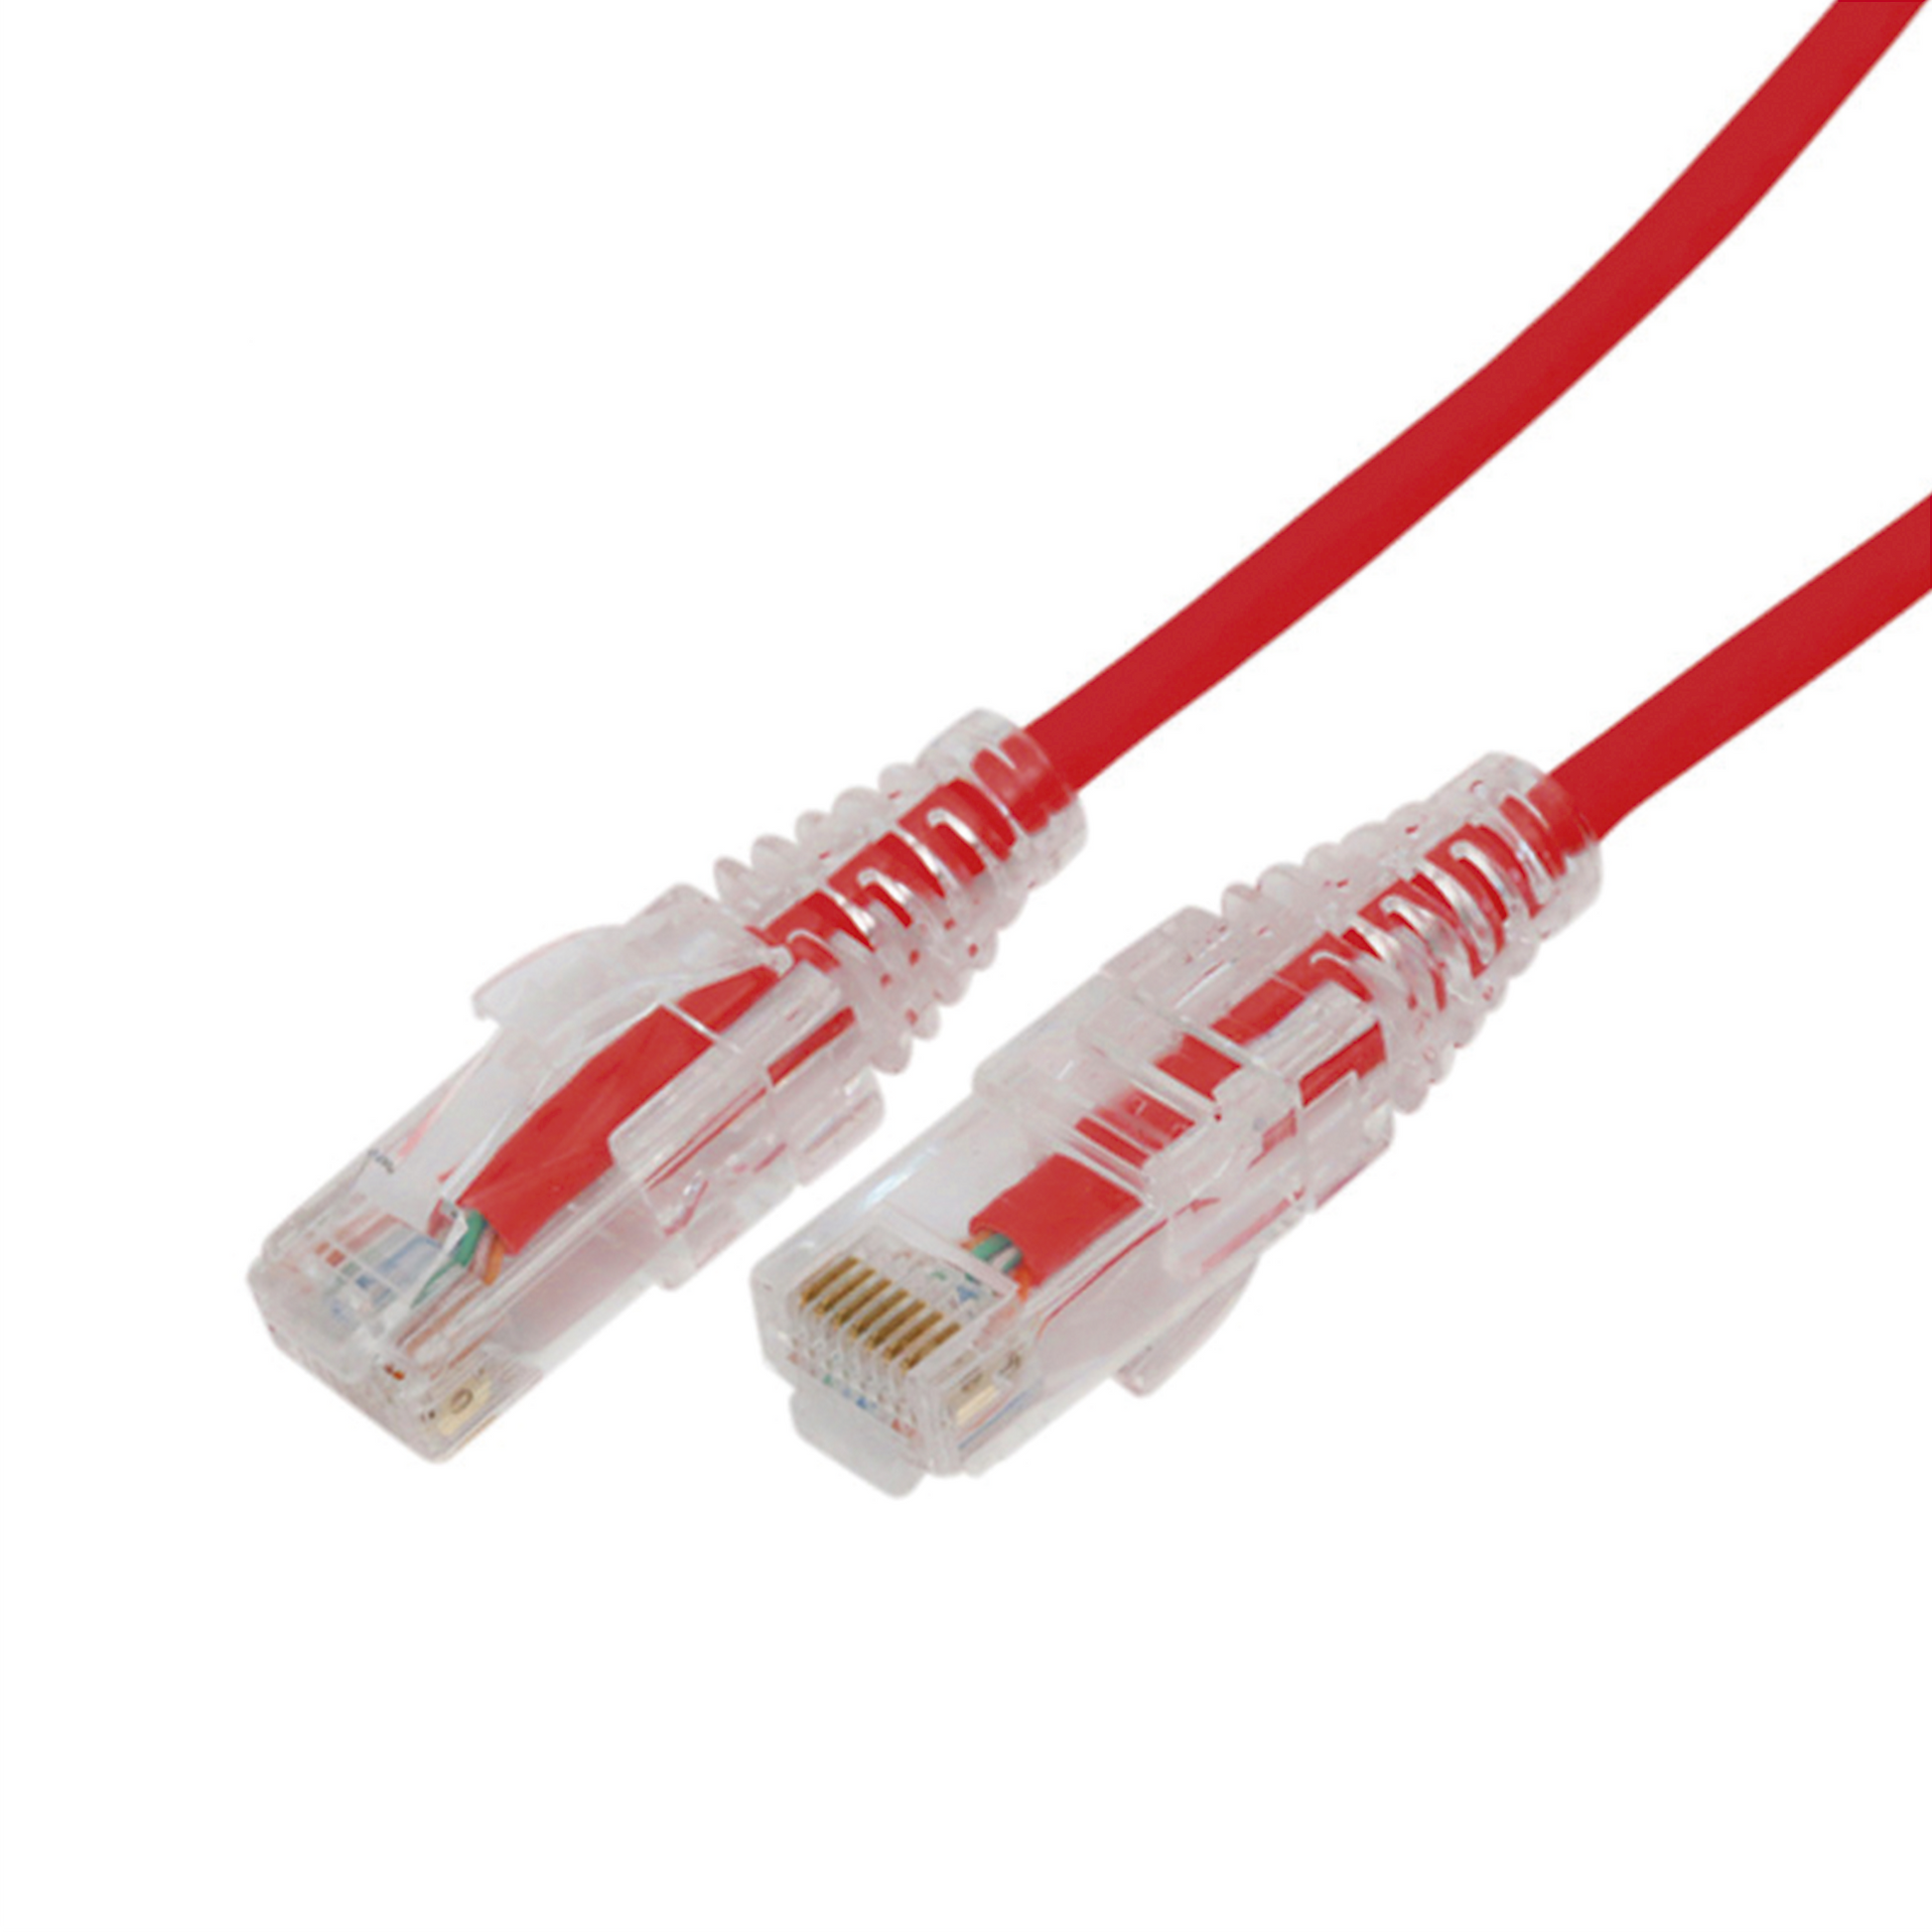 Cable de conexión de parche Cat.6 UTP de 28 AWG con bota de